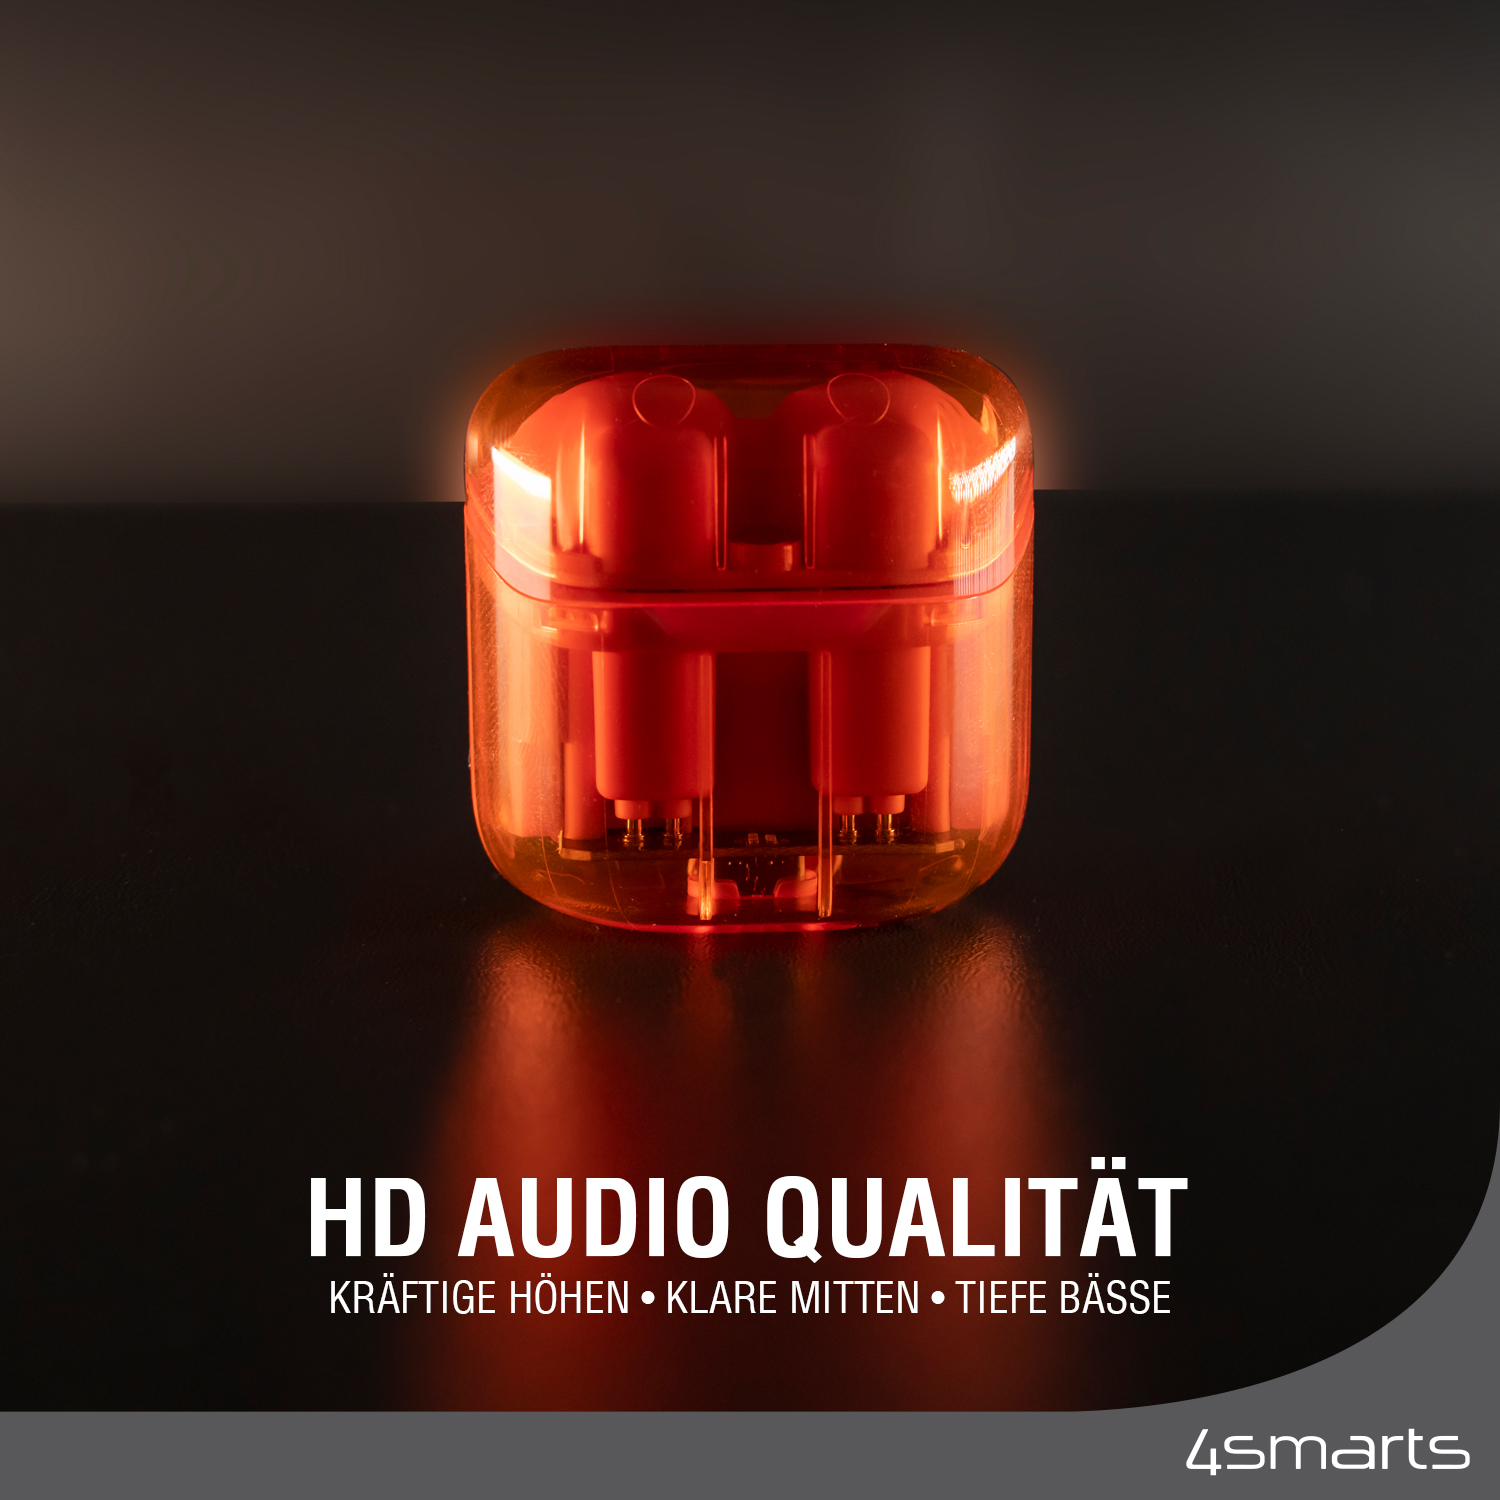 True wireless in ear Kopfhörer besitzen extrem gute HD Audio Qualität.